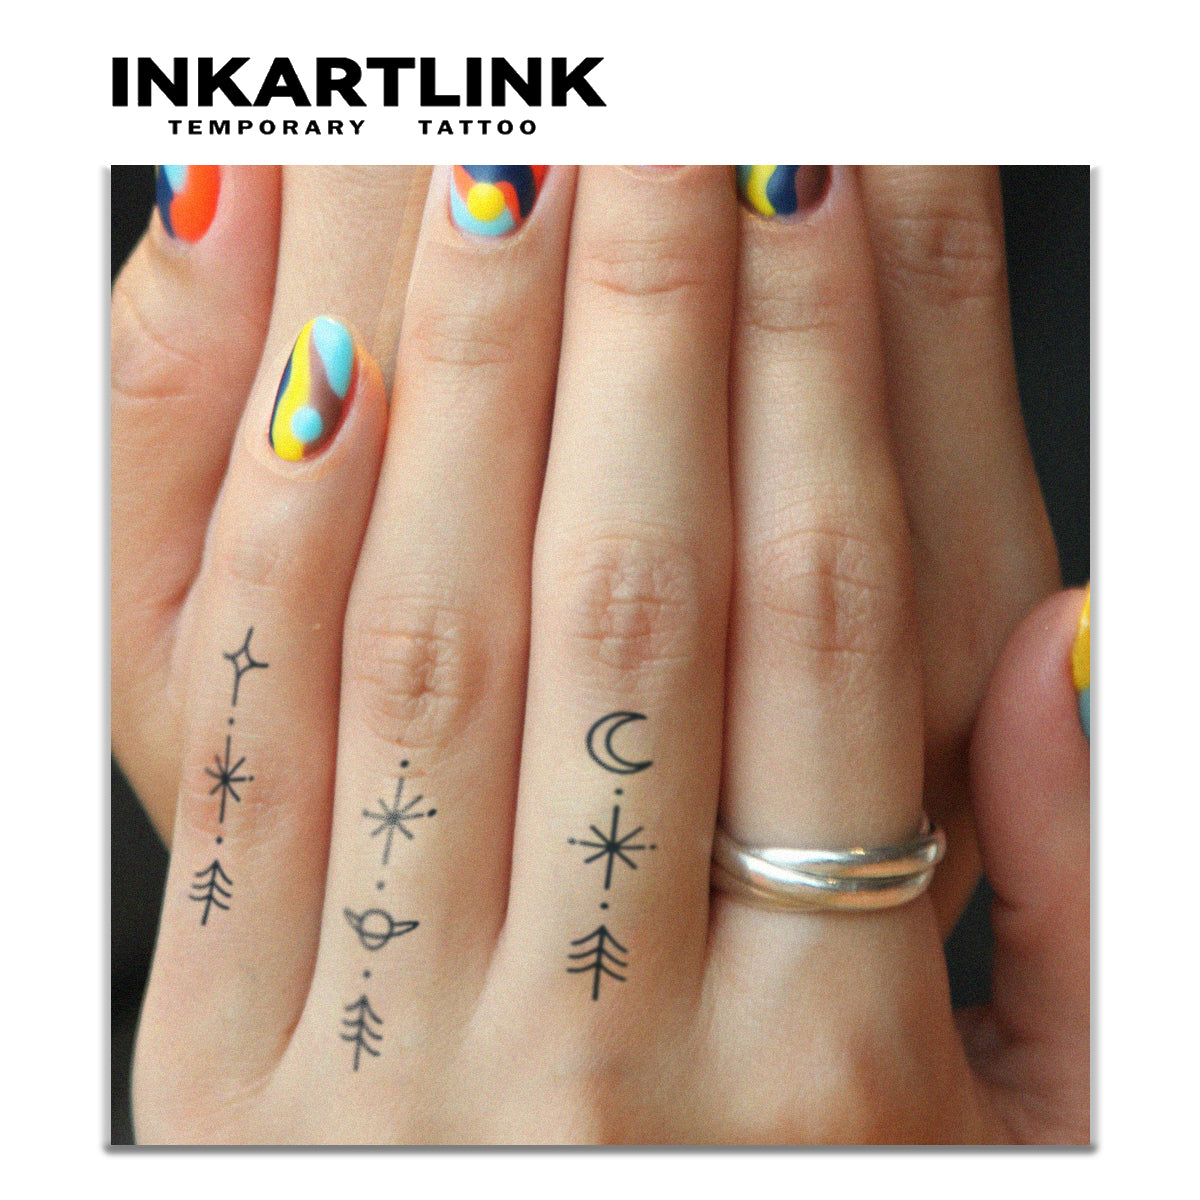 mininalist tattoo finger tattoo - Daniel's Tattoo Parlor | Facebook